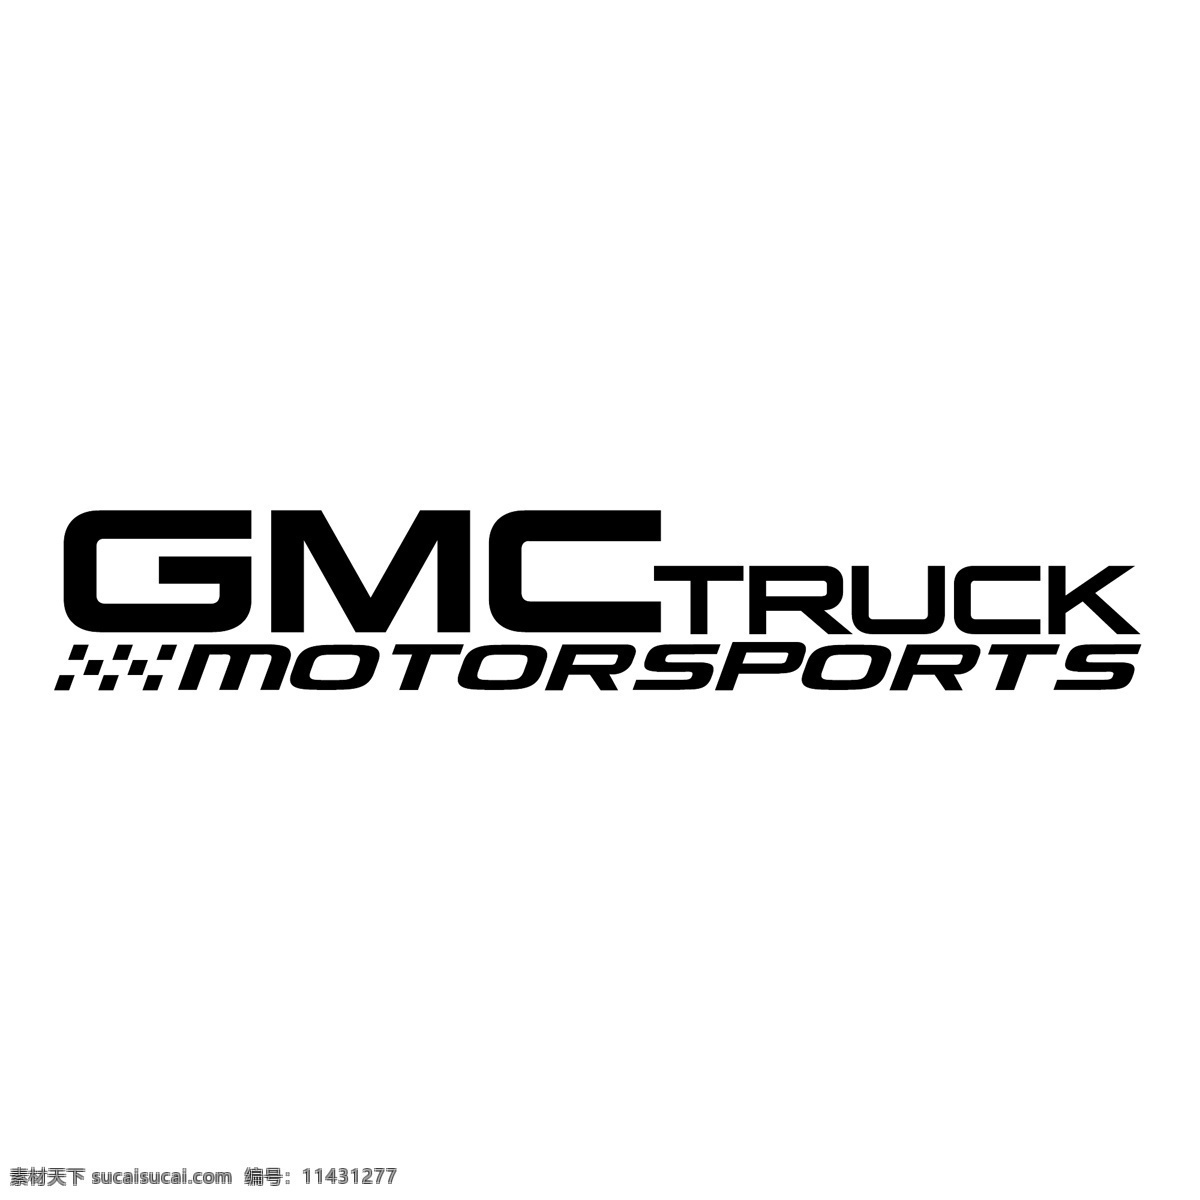 通用汽车公司 免费 gmc 卡车 赛车 标识 psd源文件 logo设计